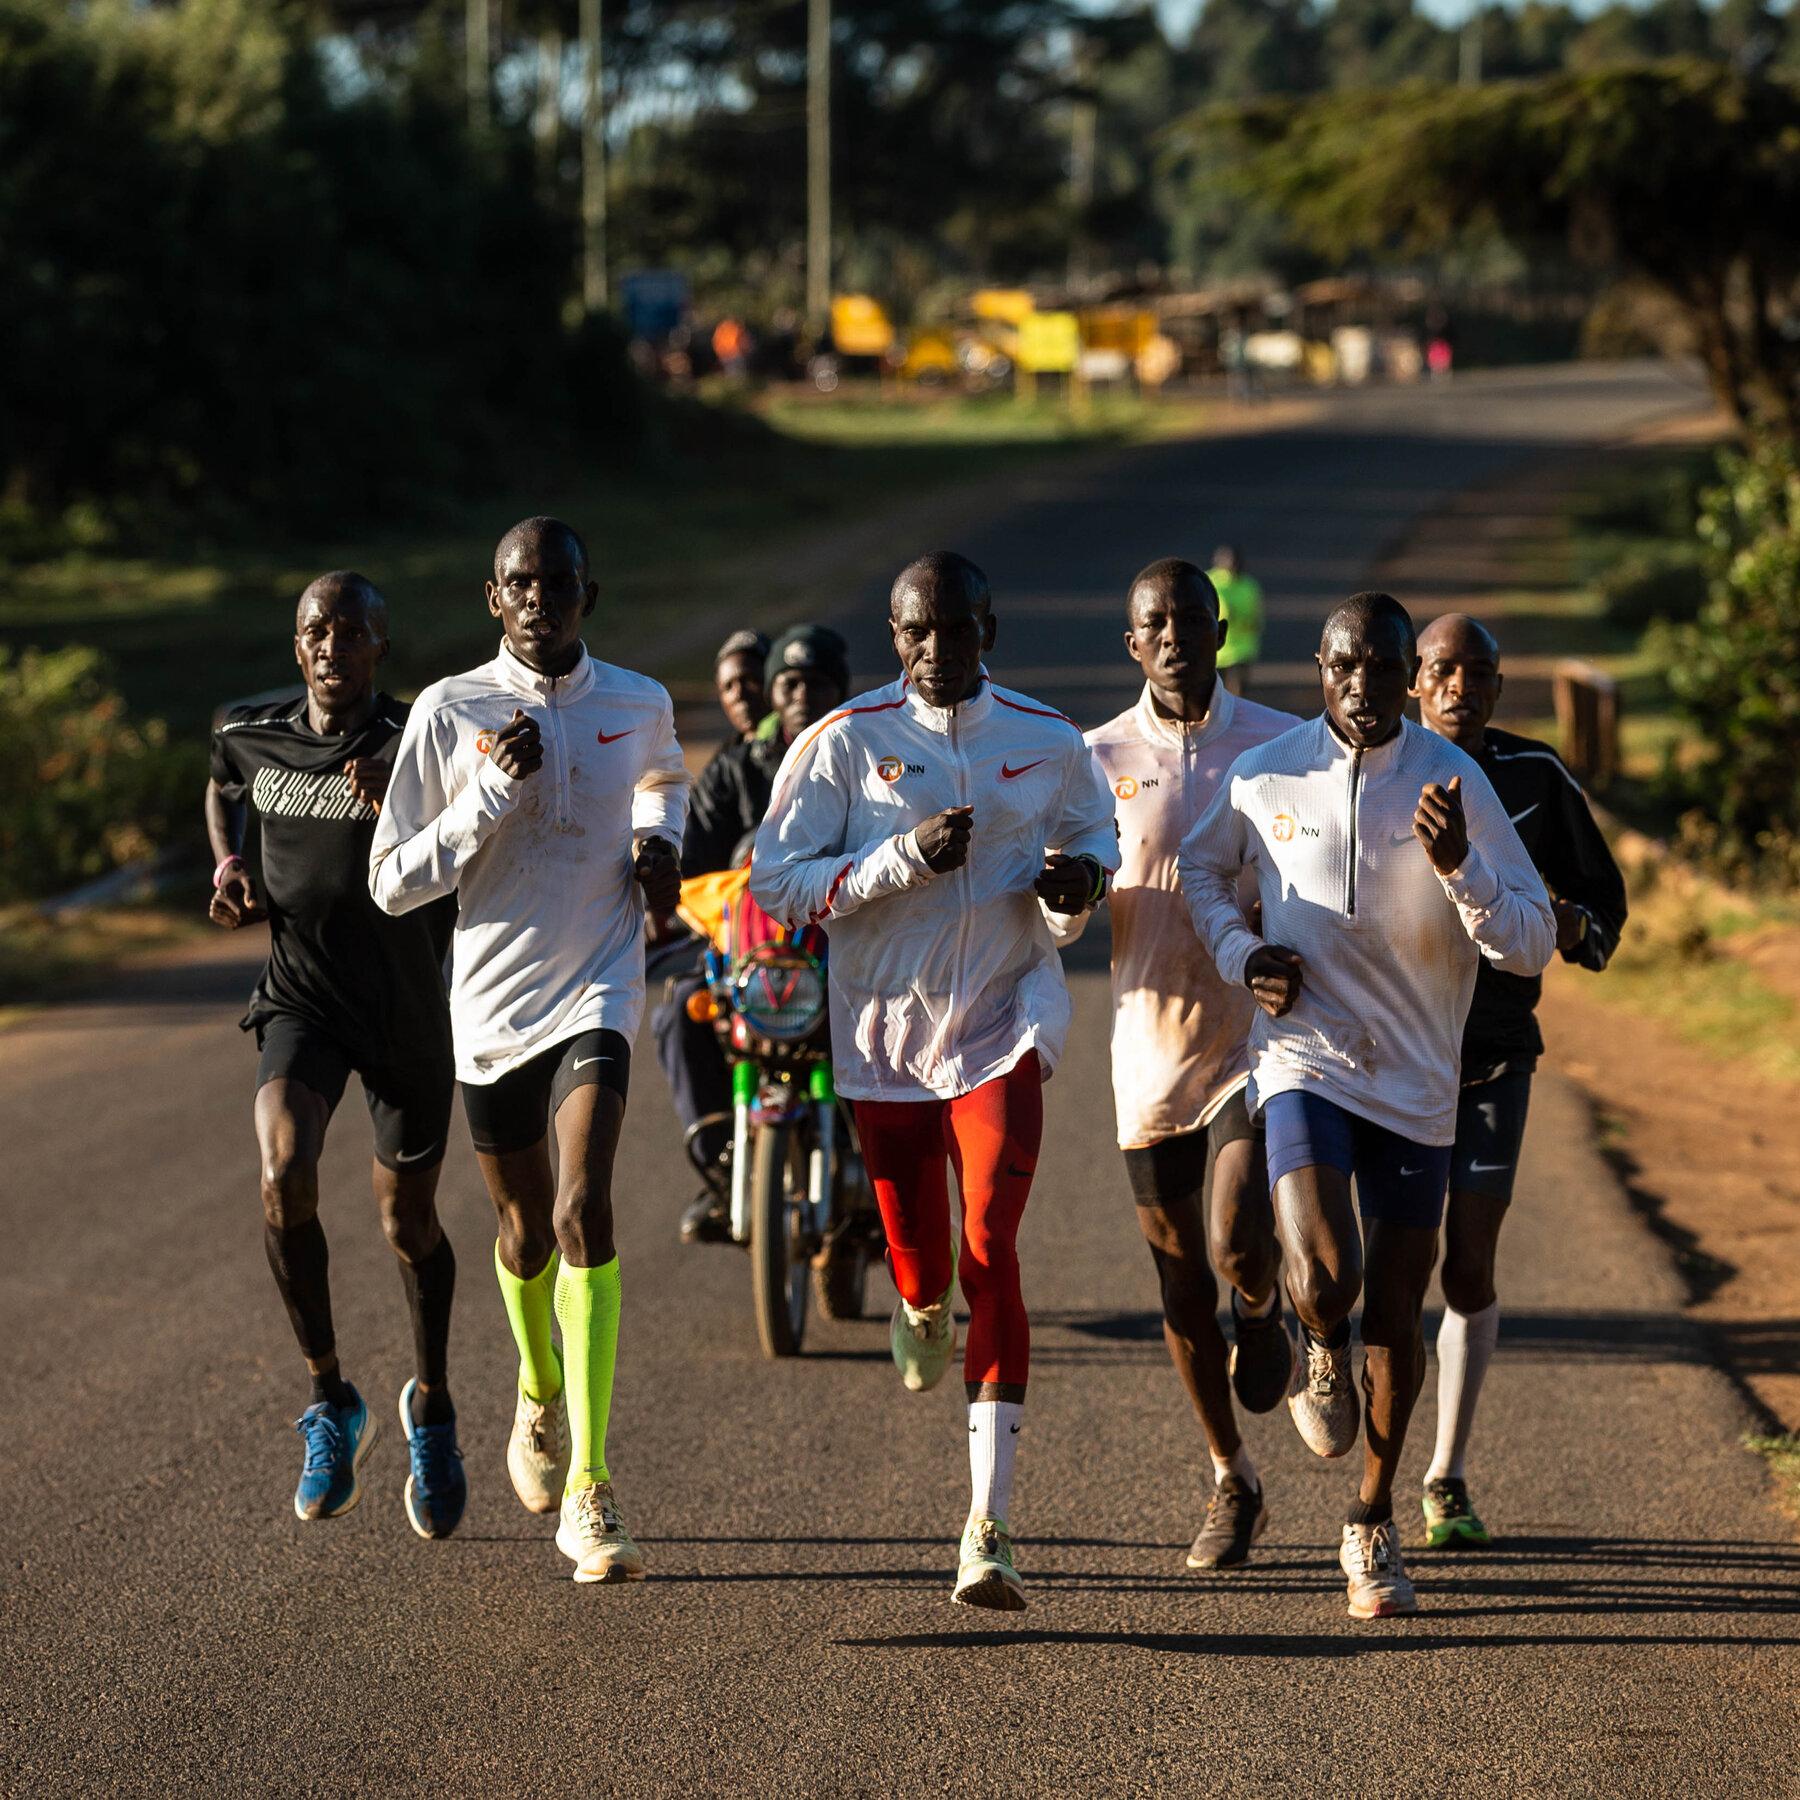 圖：肯亞的小鎮多半只有一條主要道路是柏油路，其餘都是紅土與水泥參雜，肯亞跑者在高峰期的長跑時也會轉移到柏油路上練習，熟悉比賽的路感與跑感；至於在基礎期或較為輕鬆的長跑，則多半在丘陵土徑上操作。（圖片來源：The New York Times）